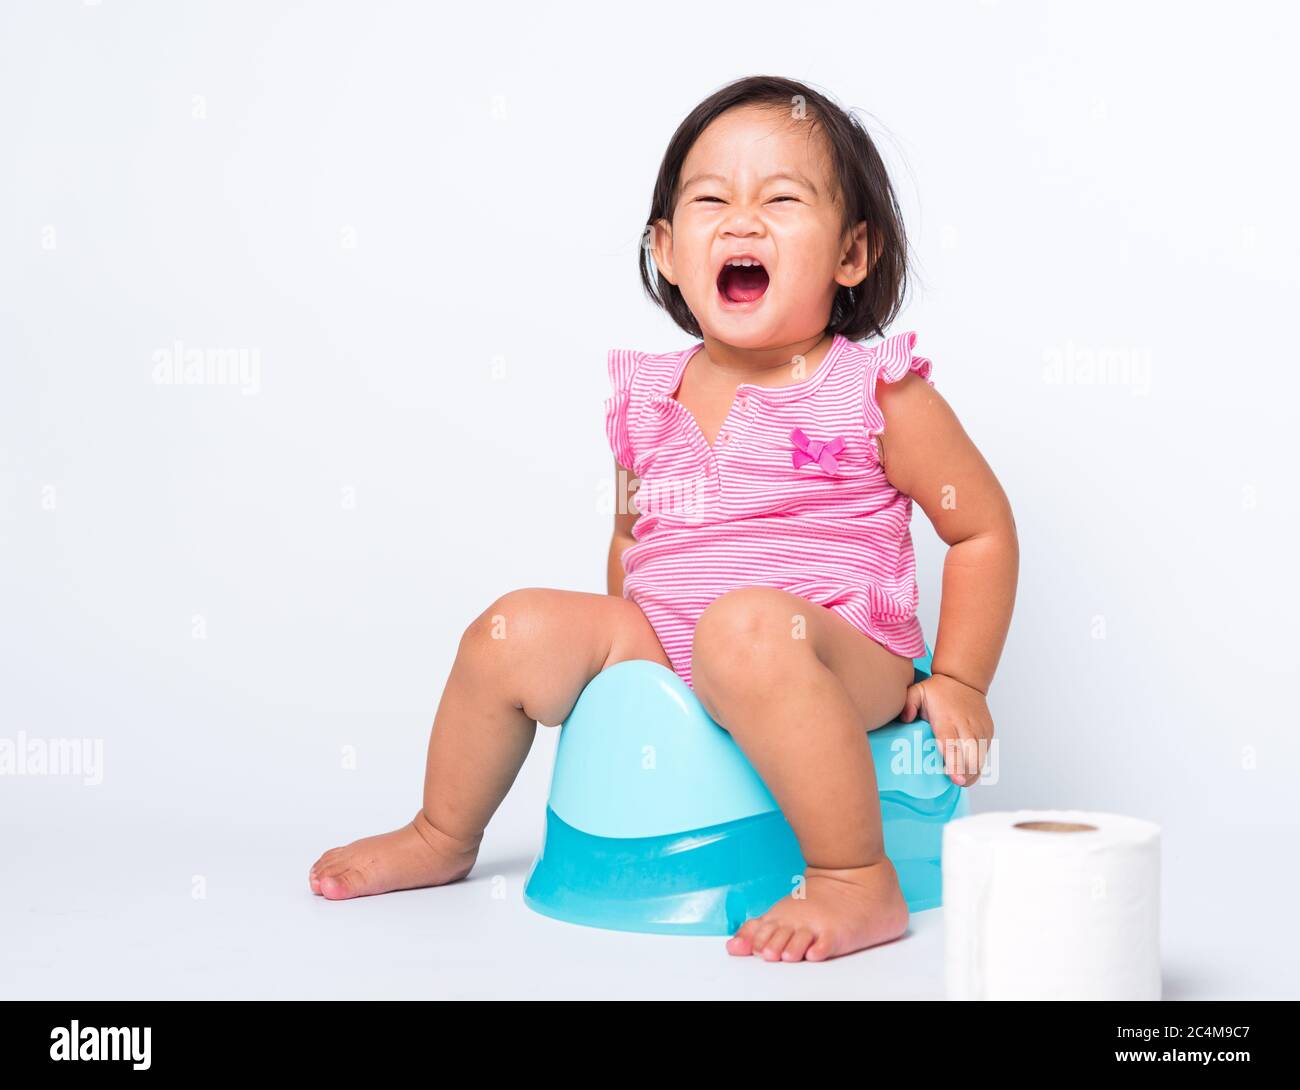 Asiatique petite mignonne bébé fille éducation entraînement à s'asseoir sur pot bleu de chambre ou pot avec des rouleaux de papier toilette, studio tourné isolé sur la ba blanche Banque D'Images